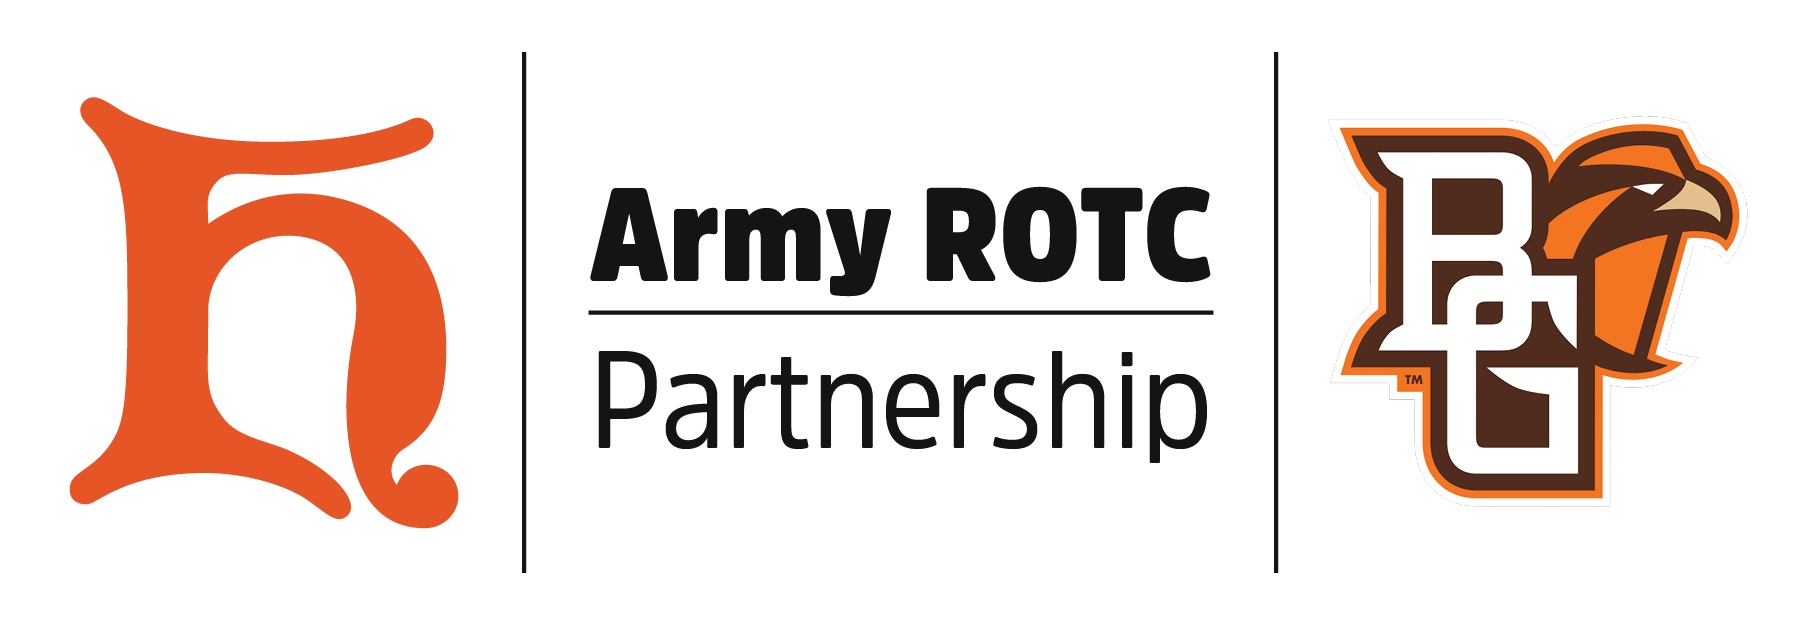 Army ROTC Partnership